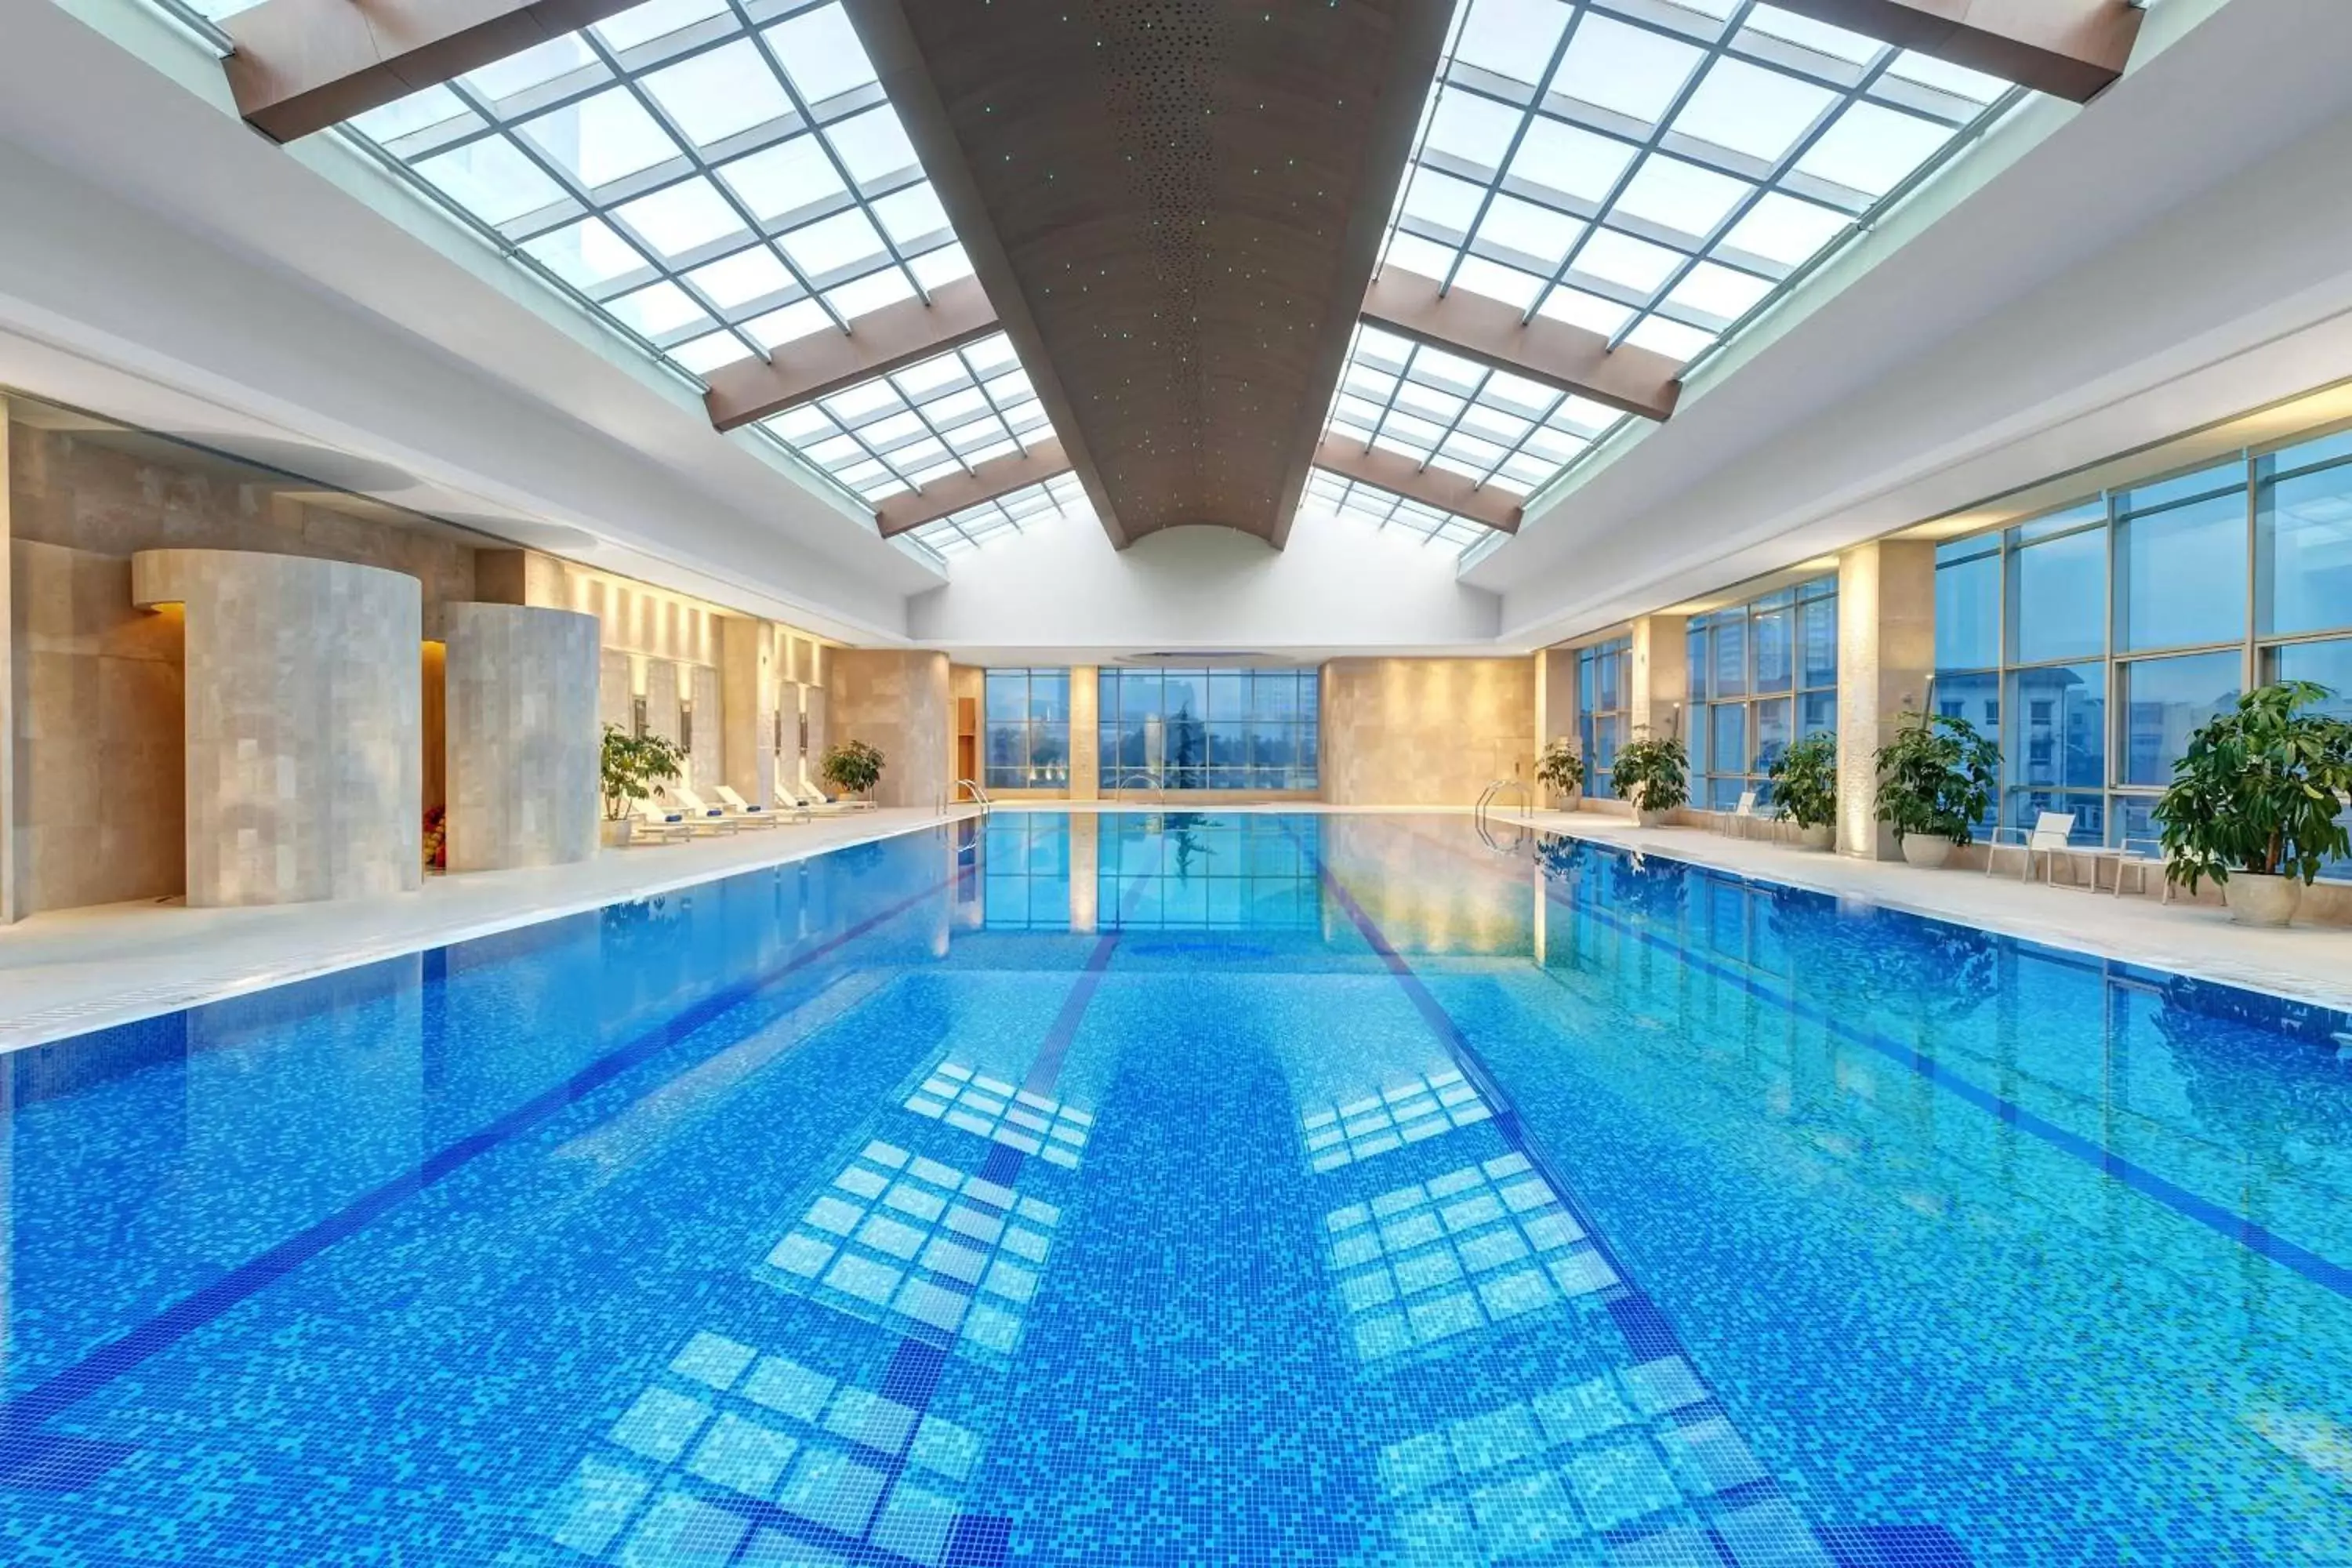 Swimming Pool in Sheraton Xi'an Hotel